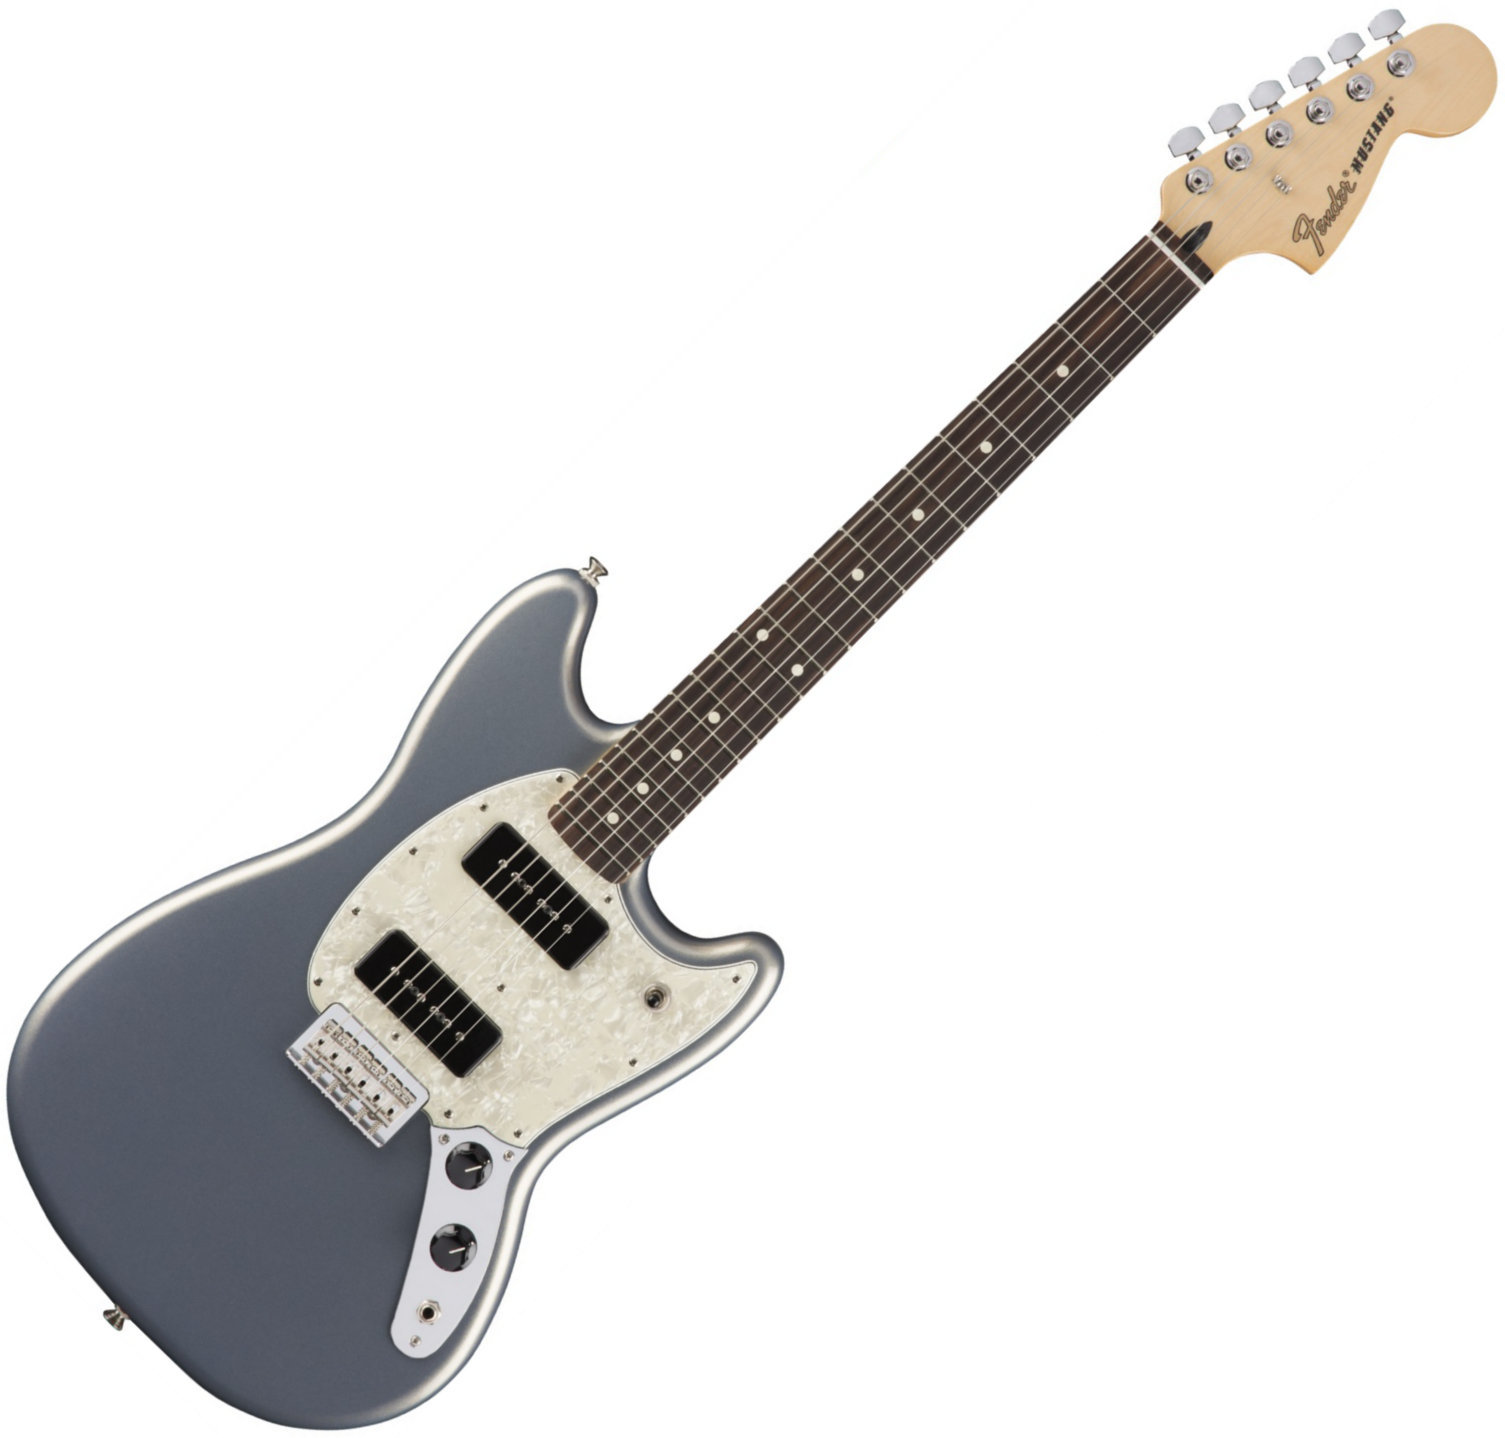 Sähkökitara Fender Mustang 90 RW Silver